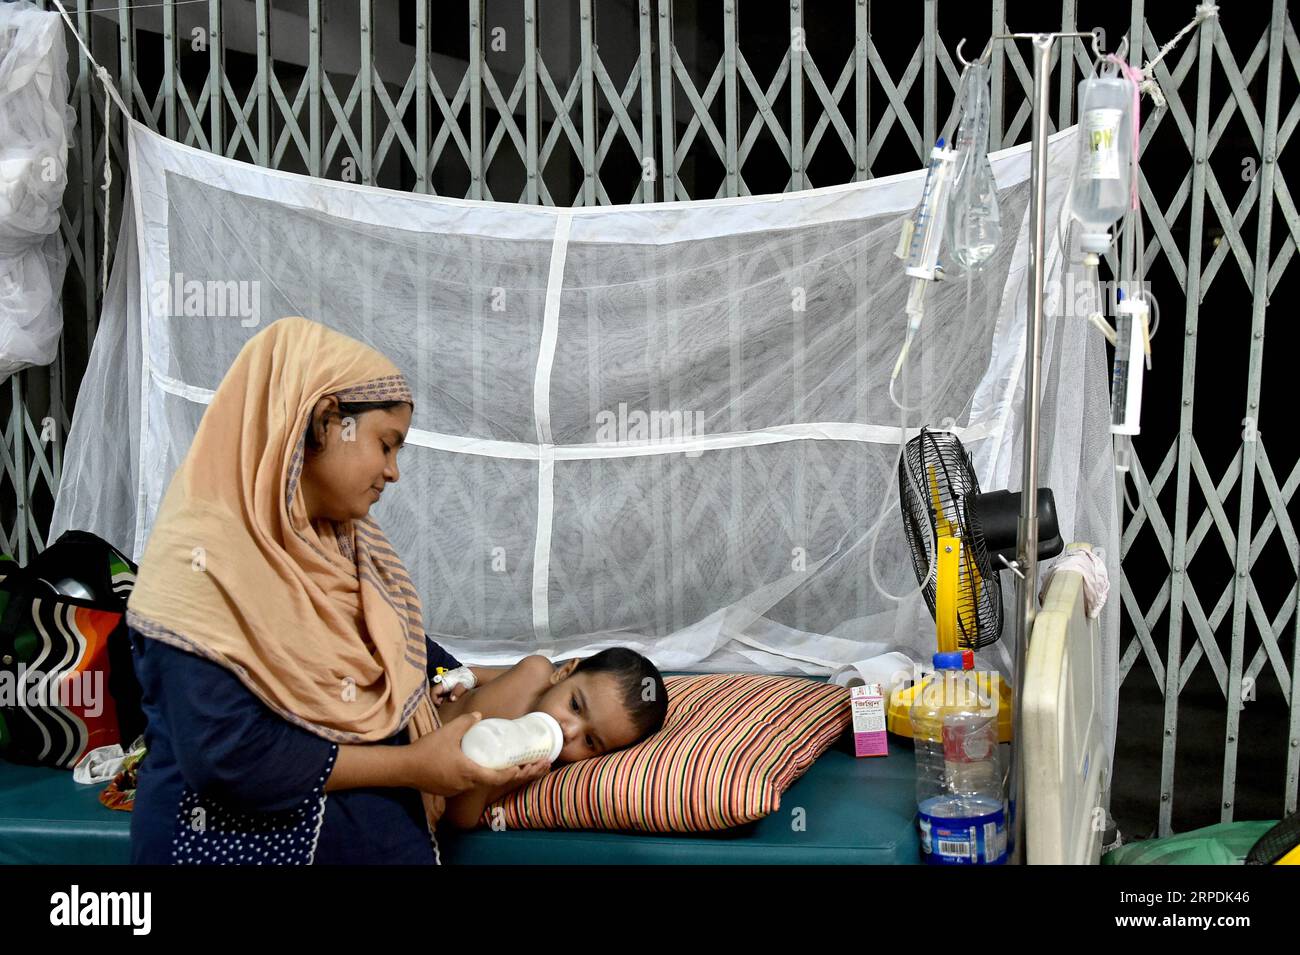 (190806) -- DHAKA, 6 août 2019 (Xinhua) -- Une mère nourrit son bébé infecté par la dengue dans un hôpital de Dhaka, au Bangladesh, le 6 août 2019. Le gouvernement bangladais a confirmé cinq autres décès dus à la dengue, portant le nombre total de décès dans le pays depuis janvier à 23, a rapporté mardi la Direction générale des services de santé. (Str/Xinhua) BANGLADESH-DHAKA-DENGUE PUBLICATIONxNOTxINxCHN Banque D'Images